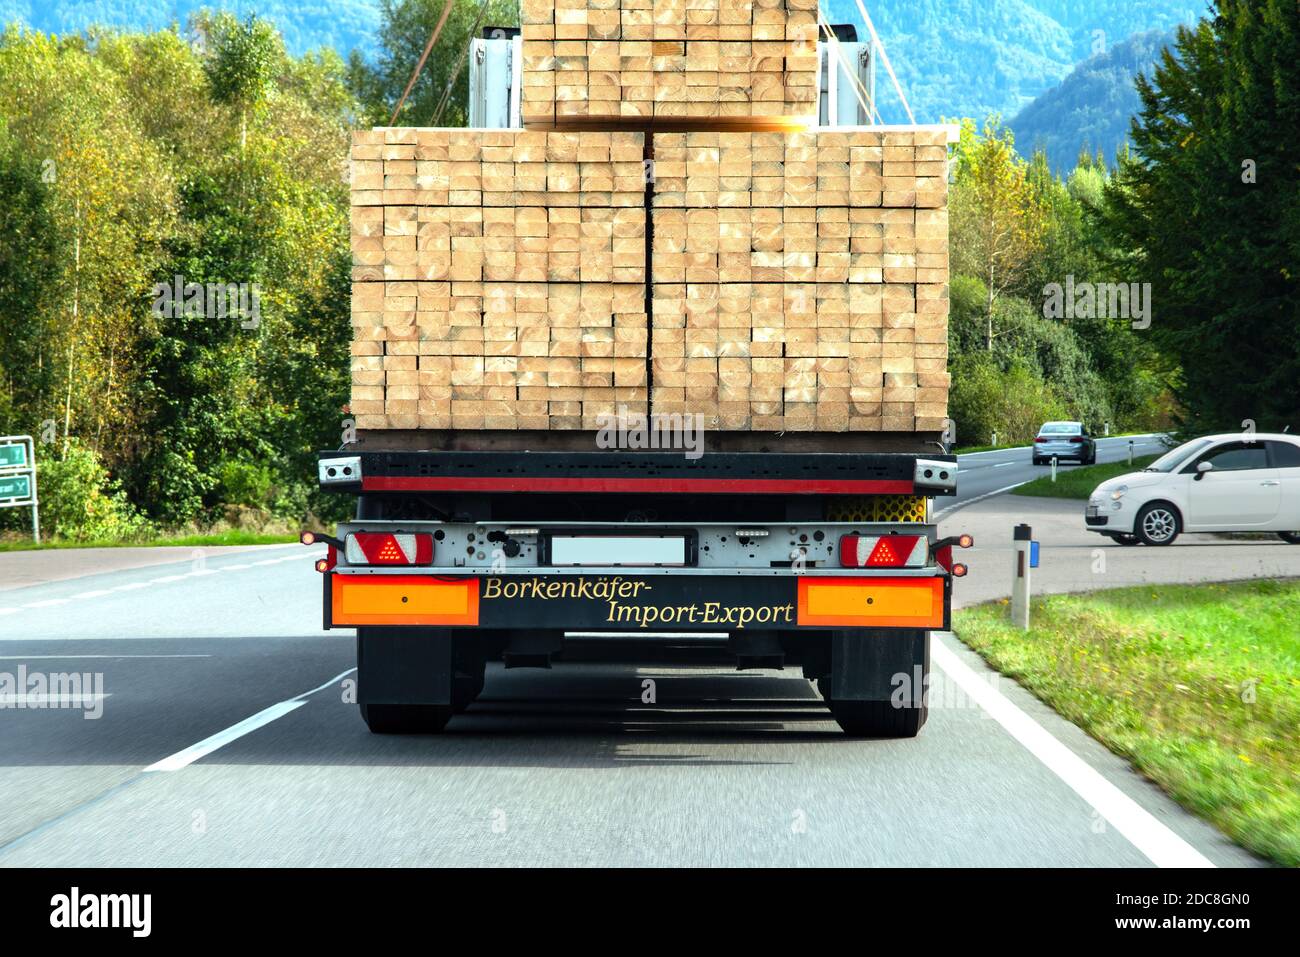 Transporteur de bois d'oeuvre avec l'inscription 'Bark beetle import-export / German: Borkenkäfer Import-Export' Banque D'Images